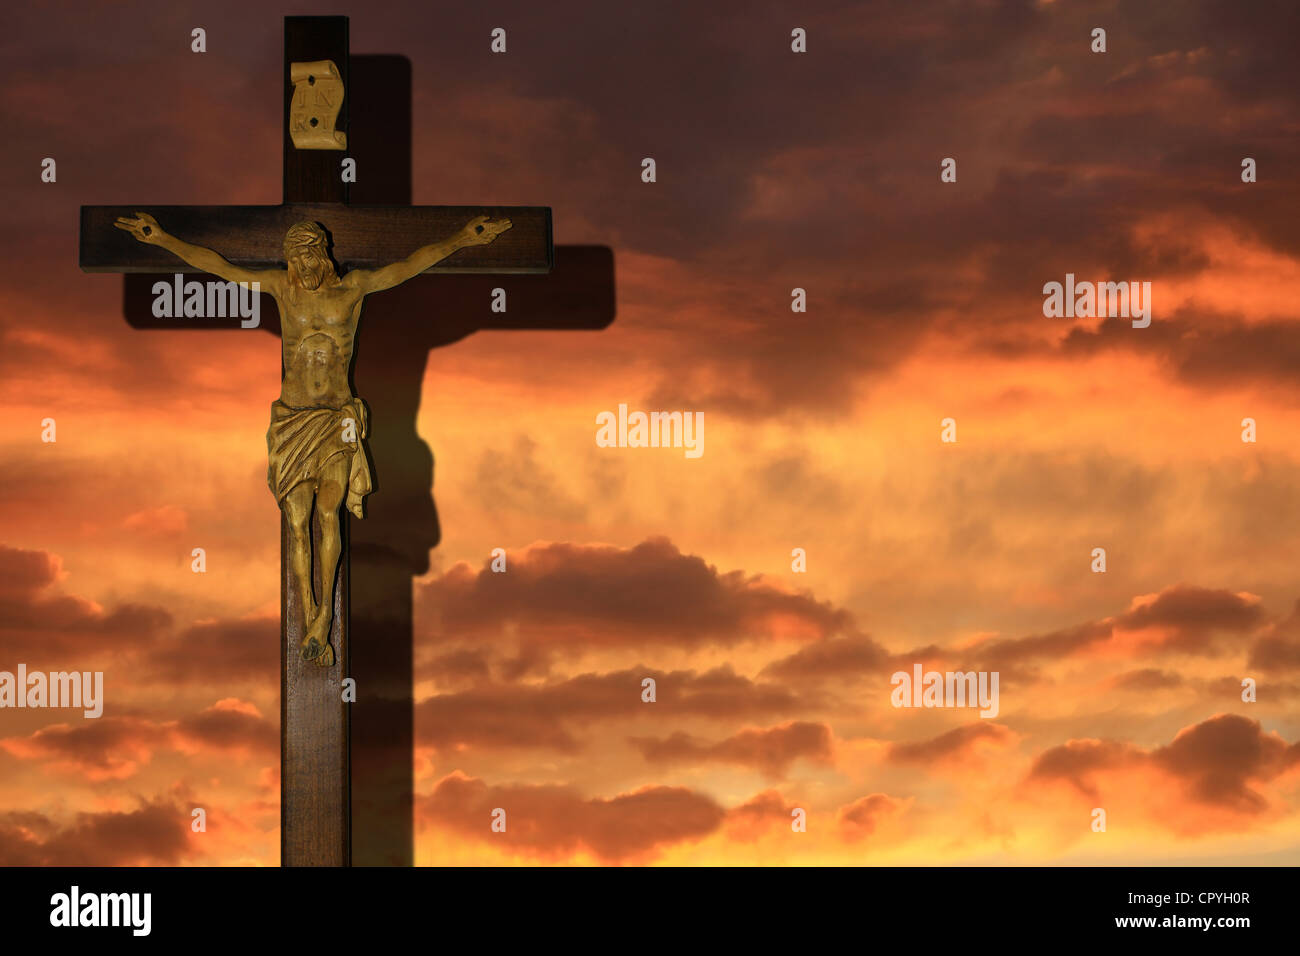 Zusammenfassung von Ostern Kreuz Kreuzigung und Jesus Christus am Himmel im  Hintergrund am Abend Stockfotografie - Alamy